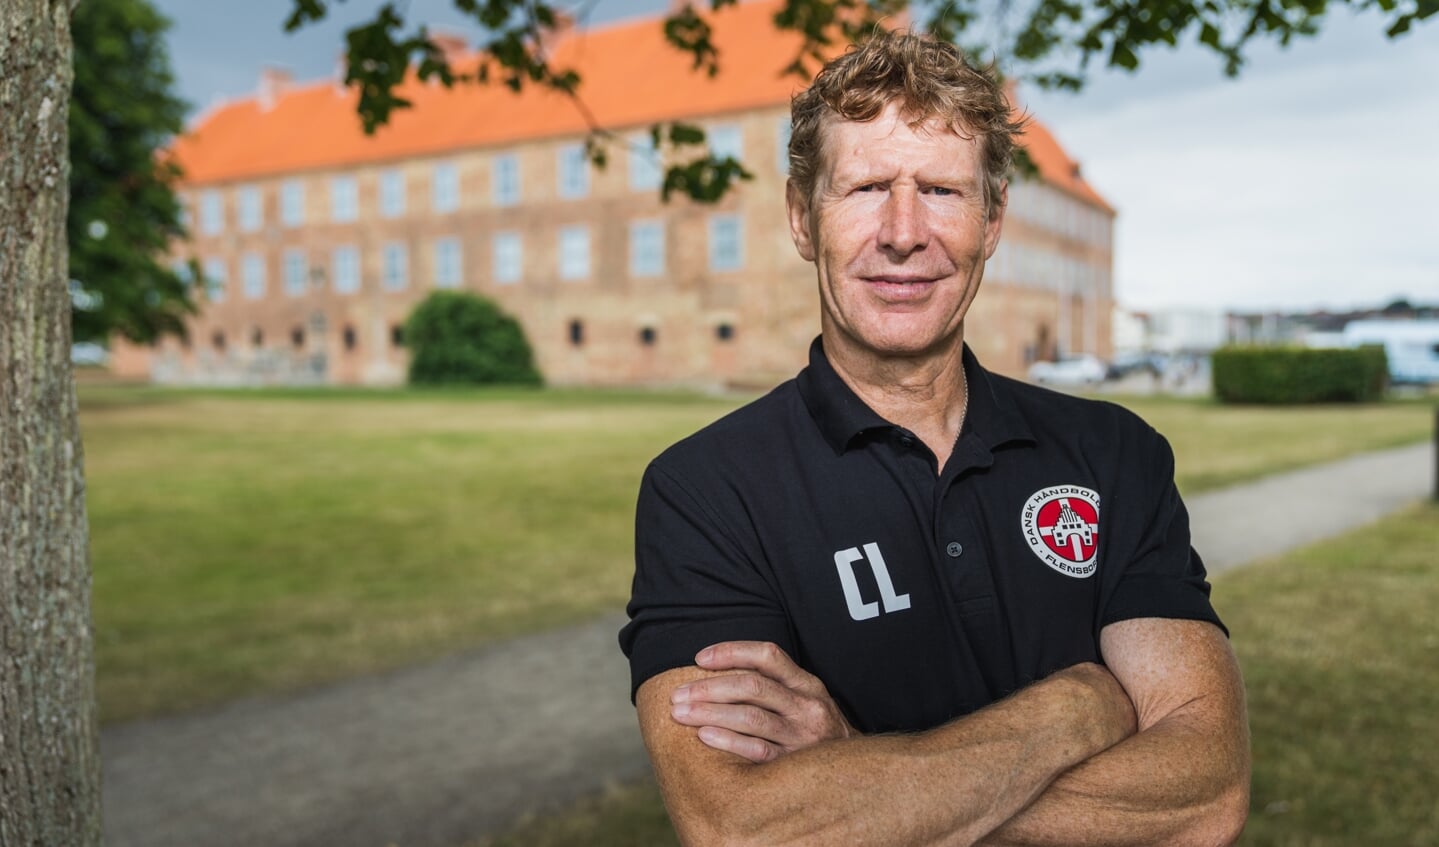 Claus Lyngsøe var stoppet som håndboldtræner, da DHK Flensborg henvendte sig. Det tilbud kunne han ikke sige nej til, men nu er det definitivt slut, siger fynboen. Foto: